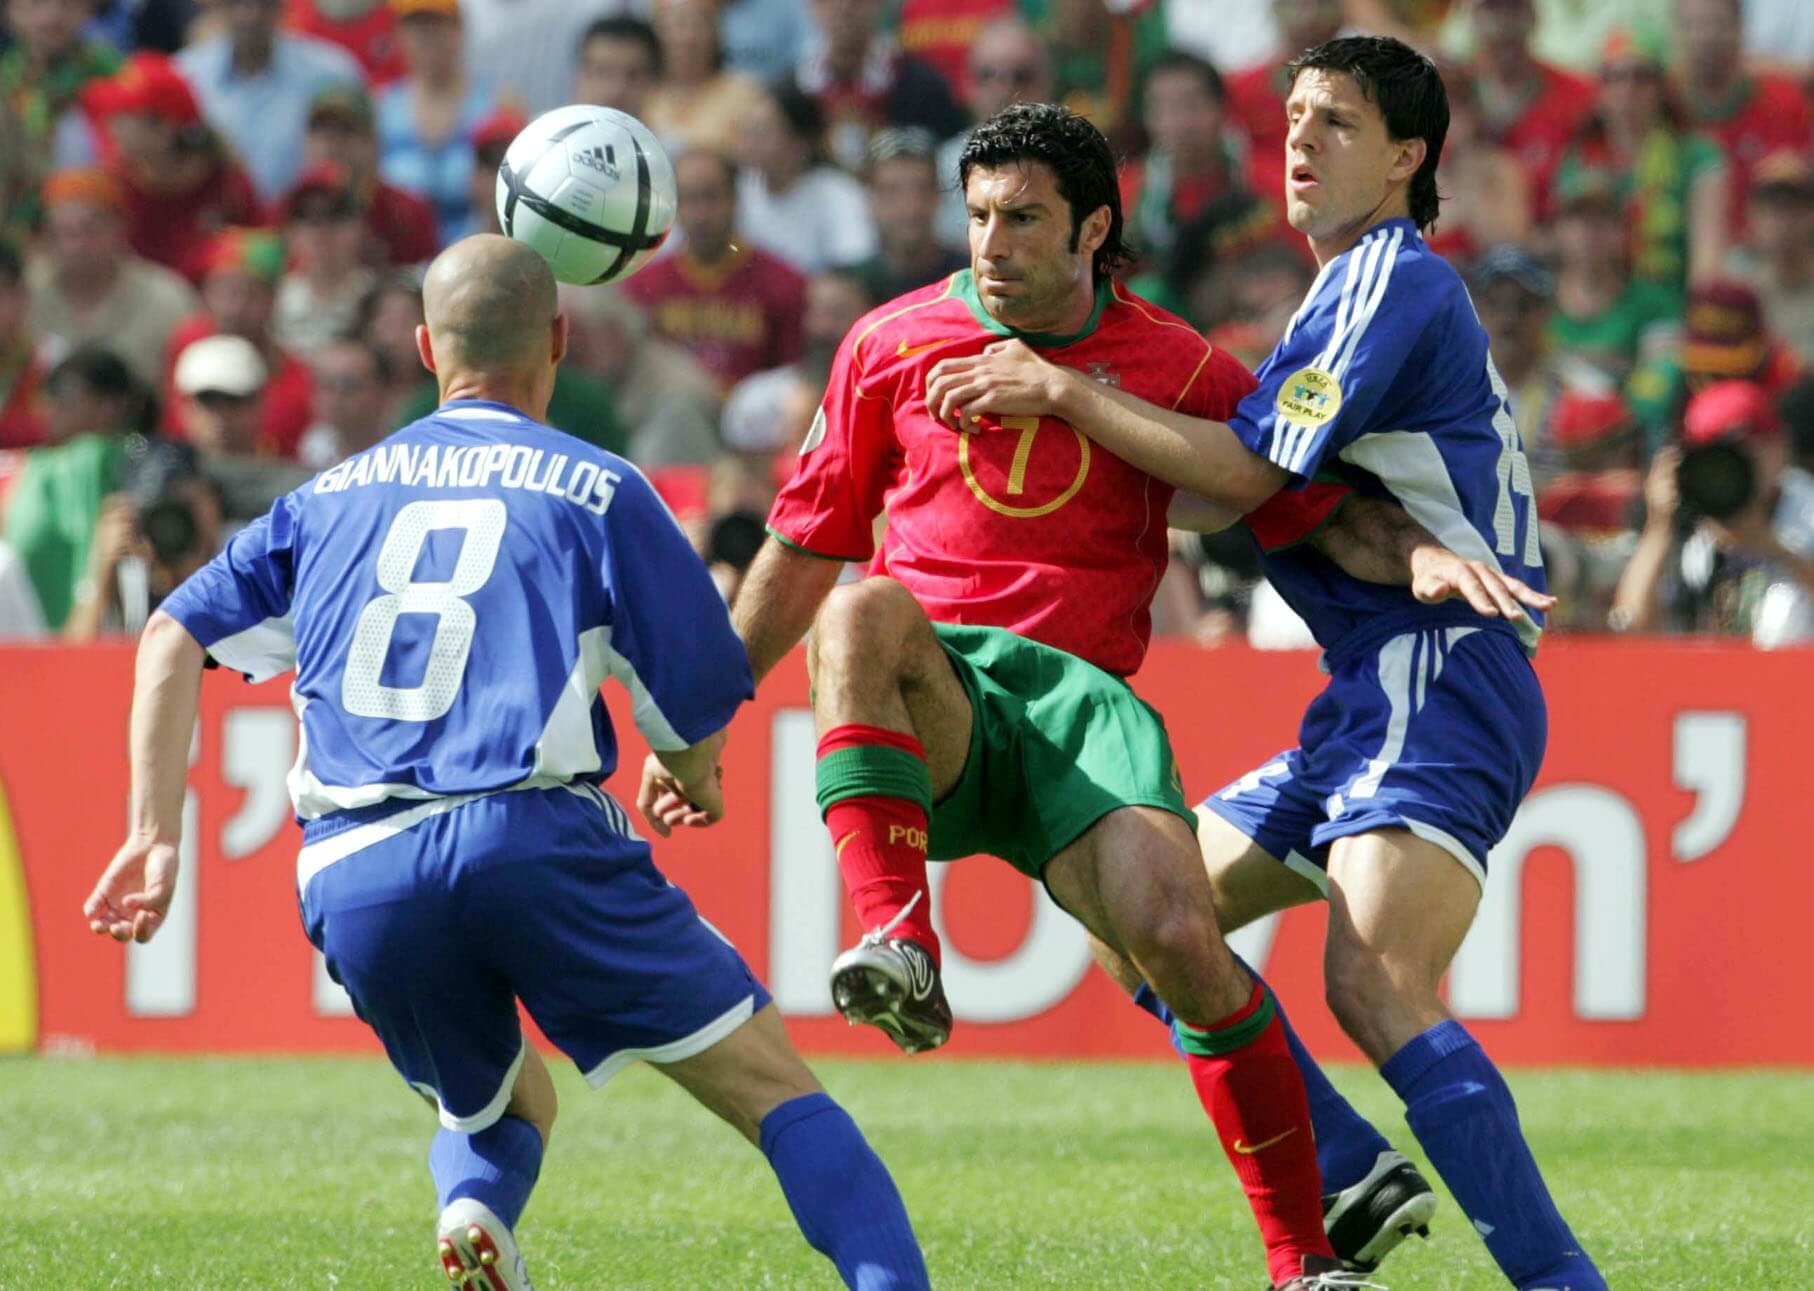 Απίστευτη αποκάλυψη! Ετοιμαζόταν τρομοκρατικό χτύπημα στην πρεμιέρα του Euro 2004